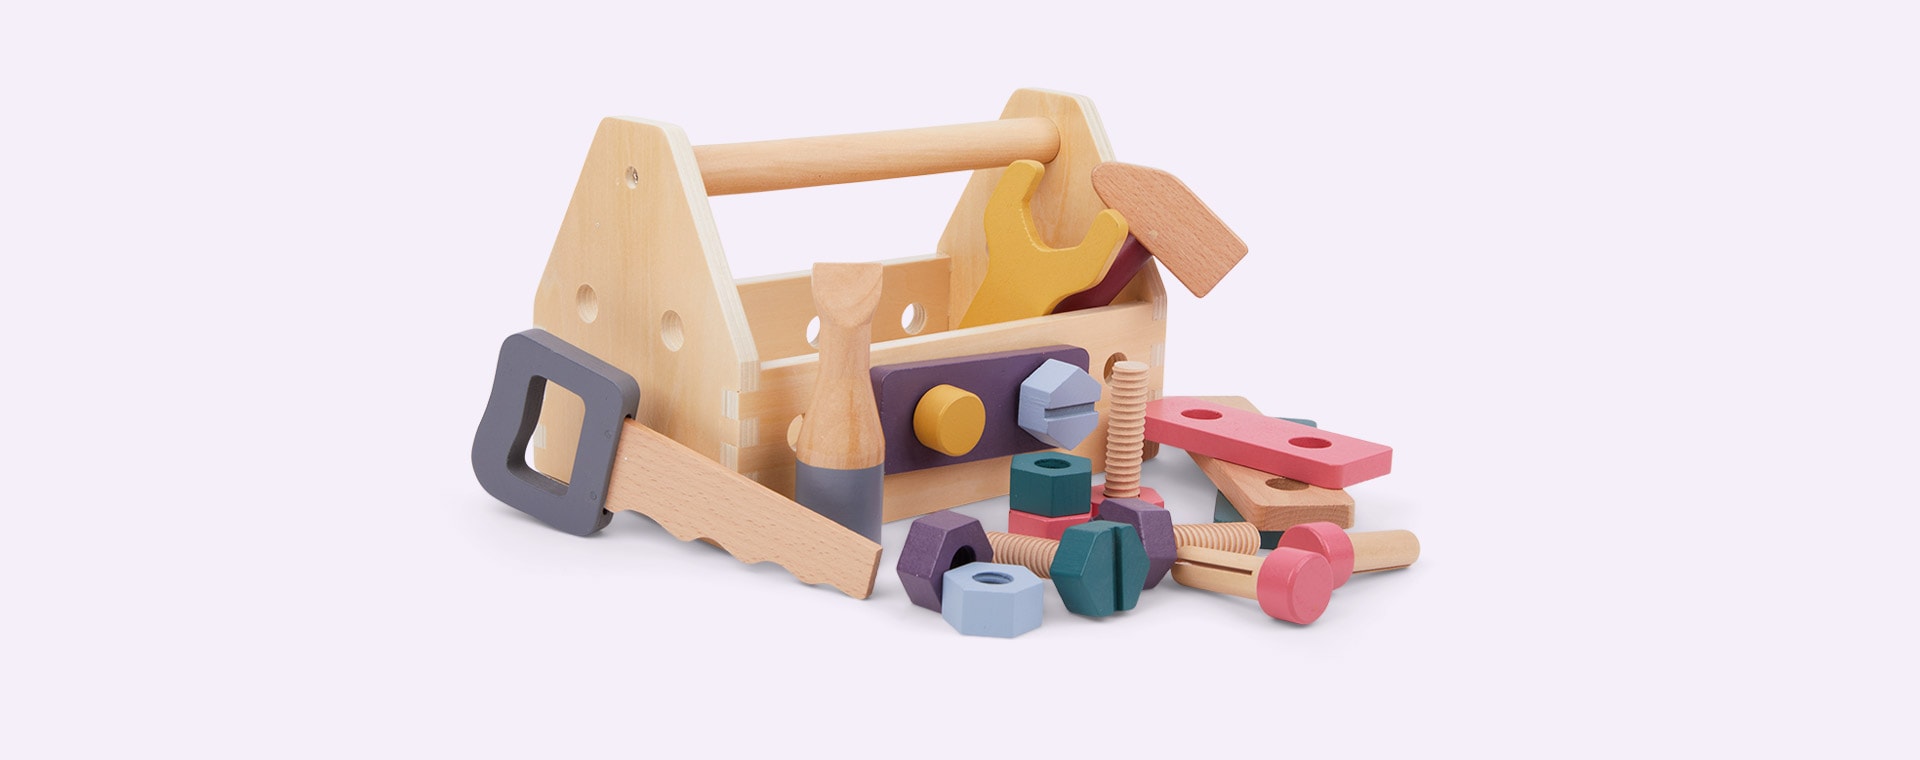 Multi Kid's Concept Tool Box KID'S HUB